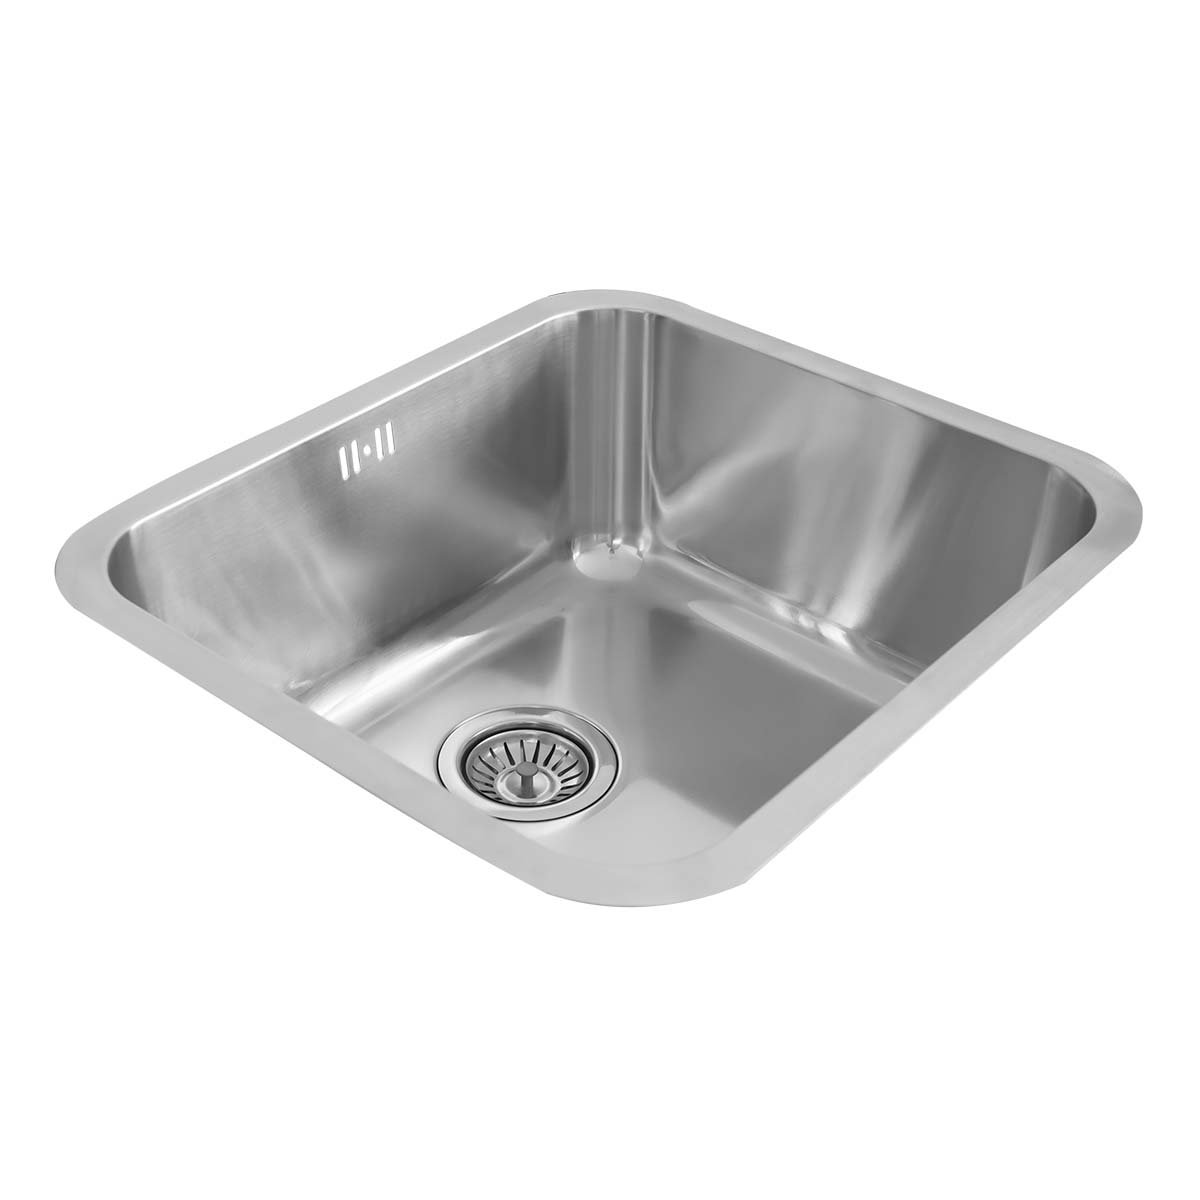 Details About Designer 500 X 450mm Single Bowl Stainless Steel Undermount Kitchen Sink Waste